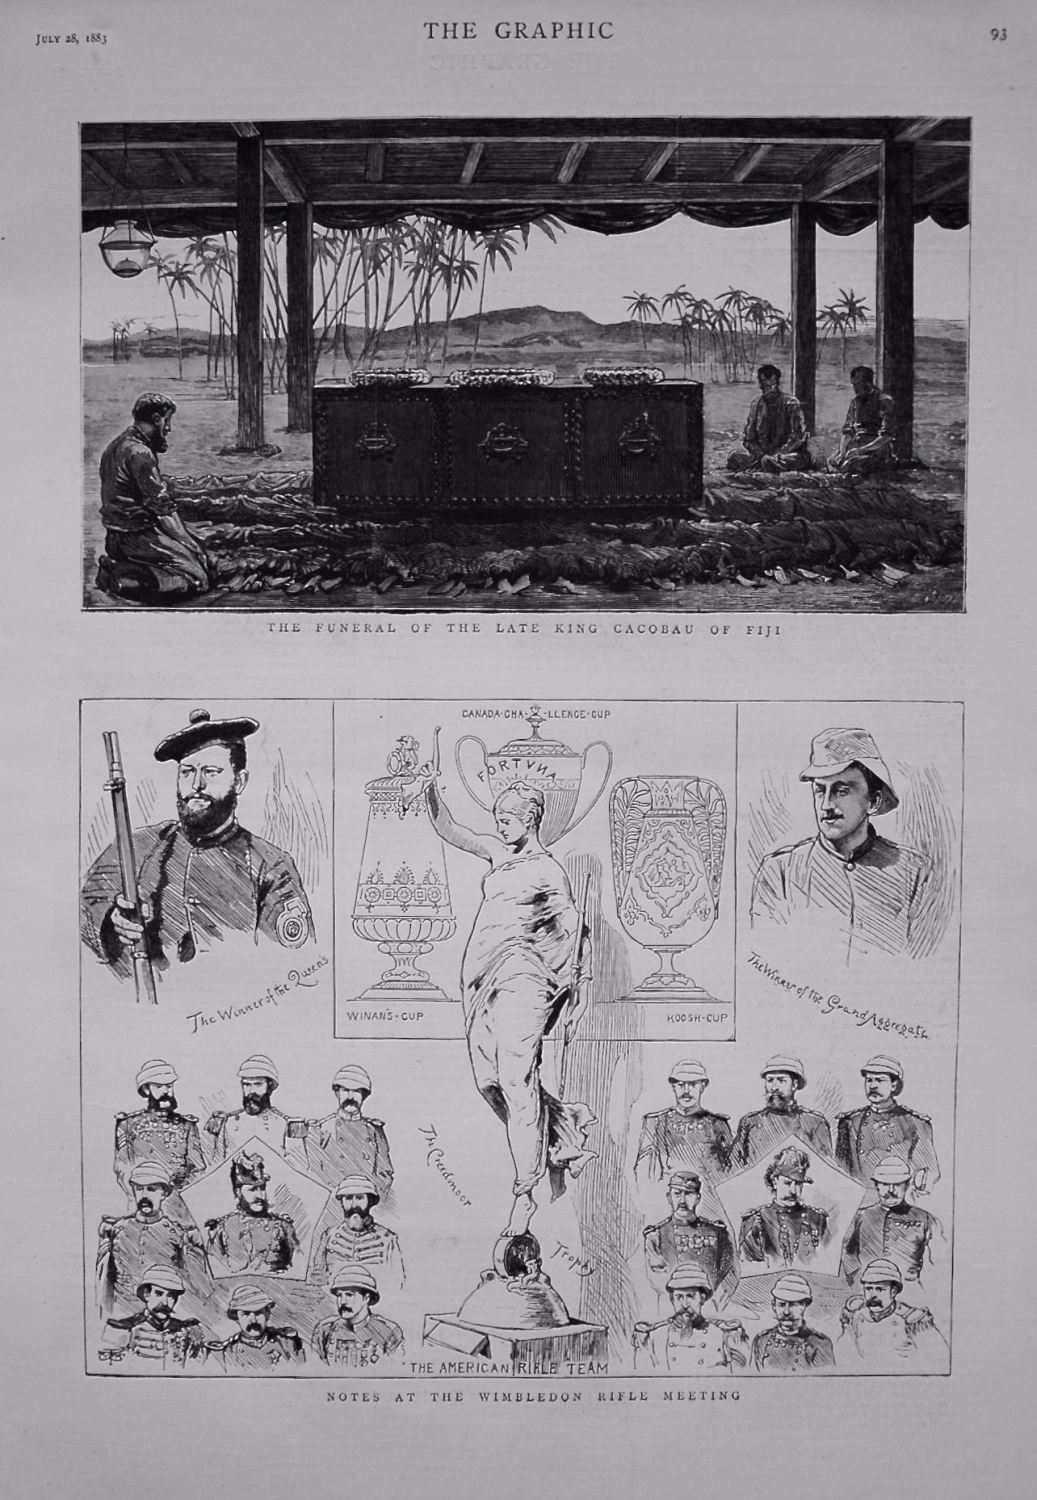 Notes at the Wimbledon Rifle Meeting. 1883.